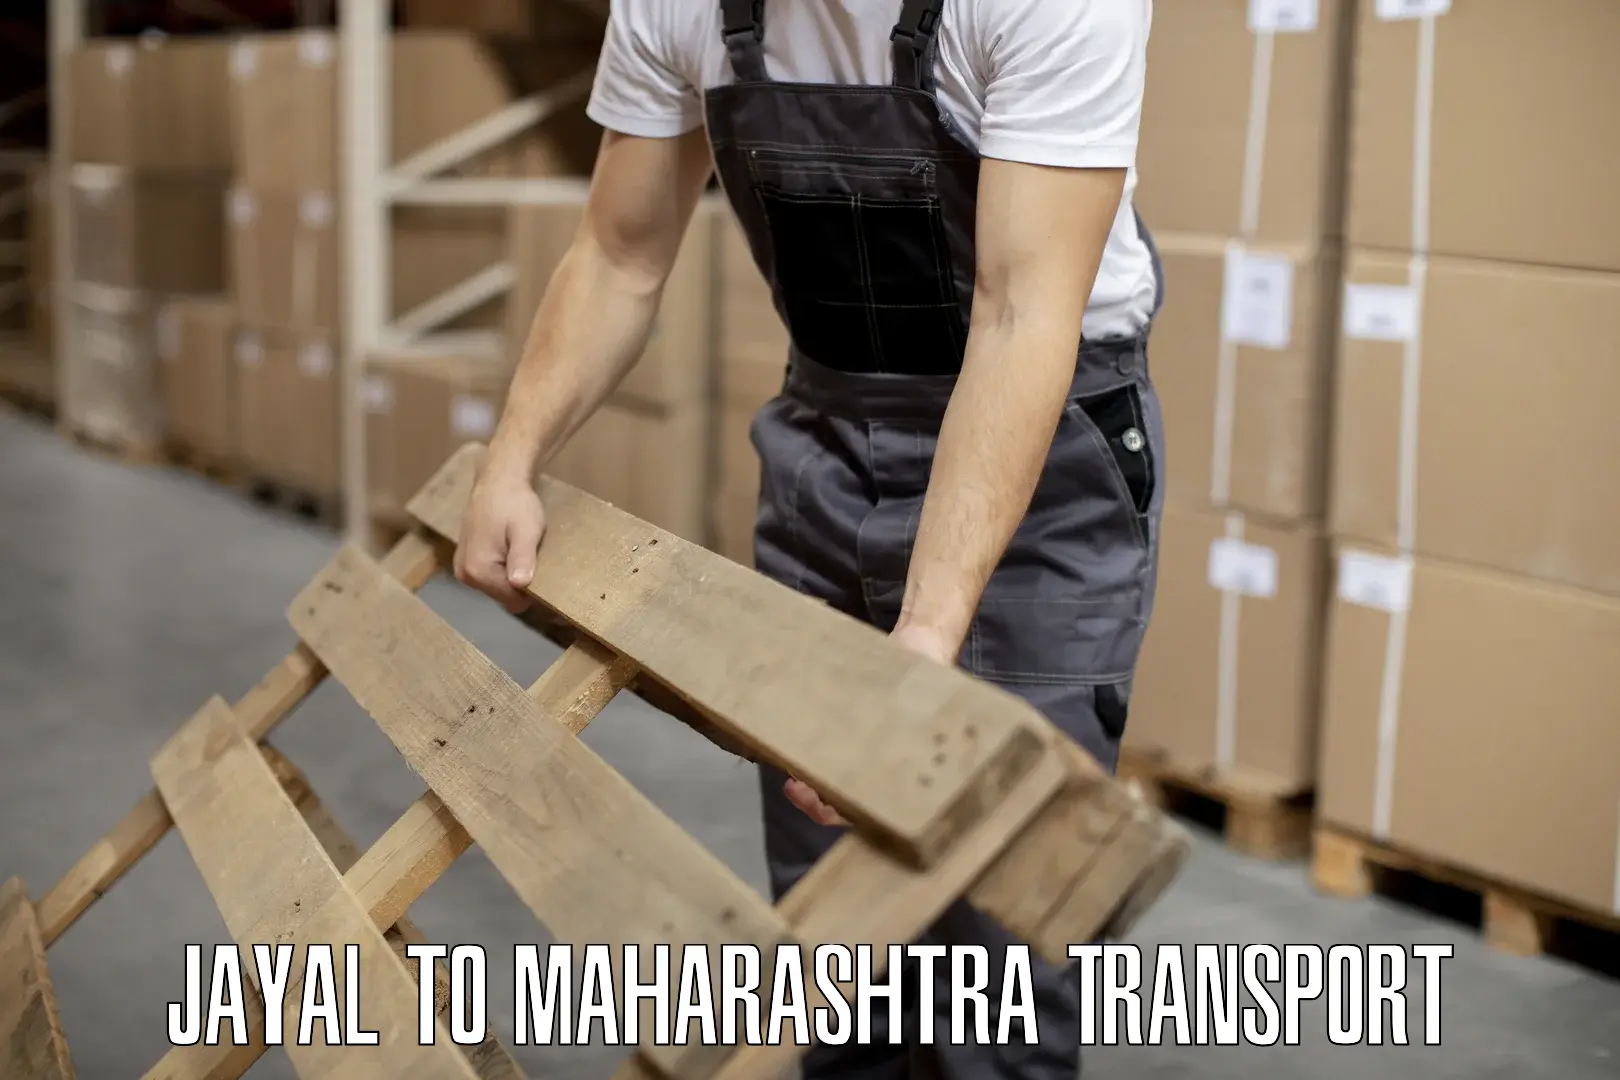 Daily parcel service transport Jayal to Maharashtra